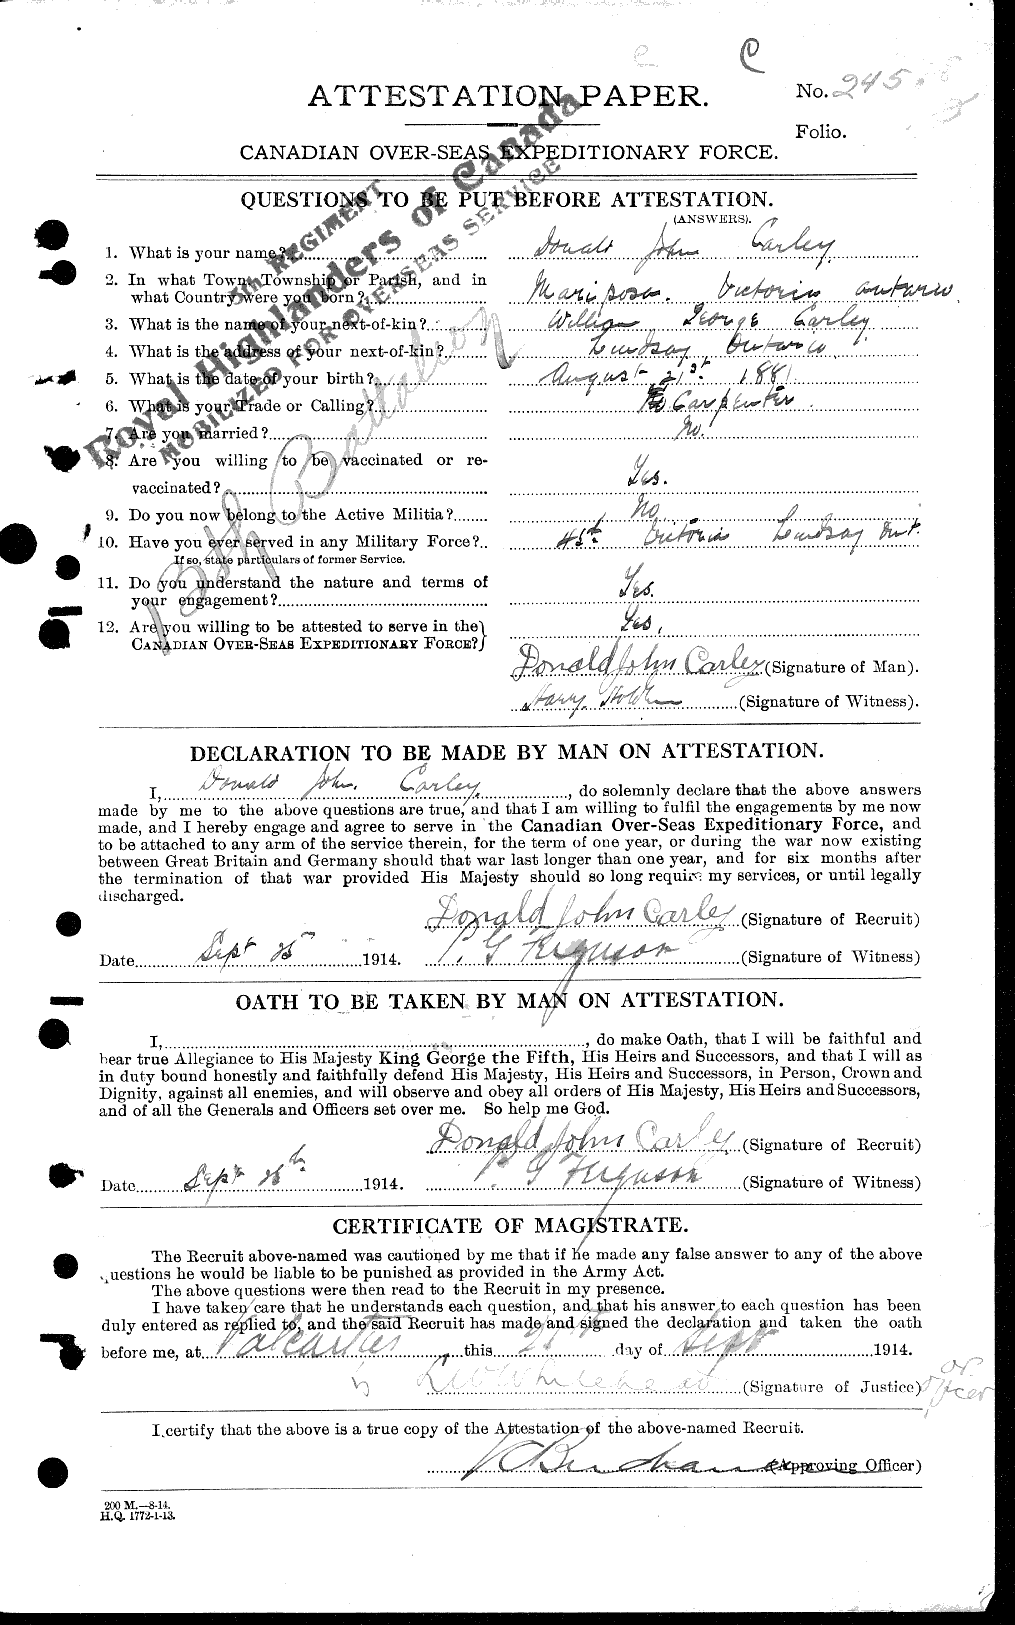 Dossiers du Personnel de la Première Guerre mondiale - CEC 009603a